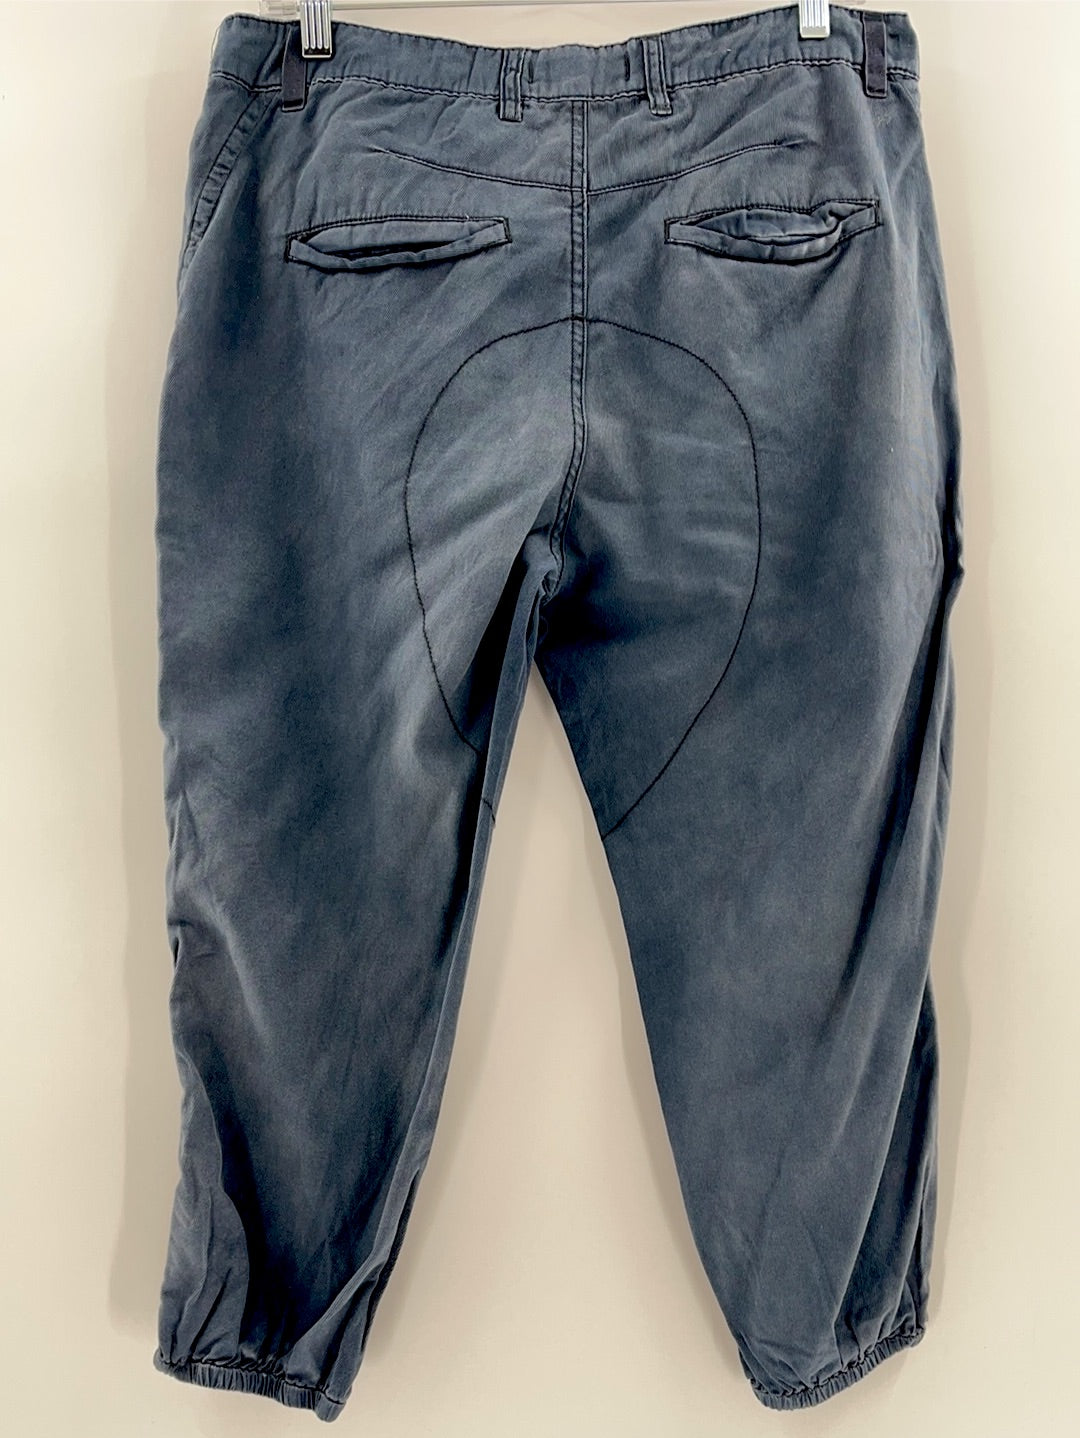 Free People Zipper Pocket Jeans (Size 2)